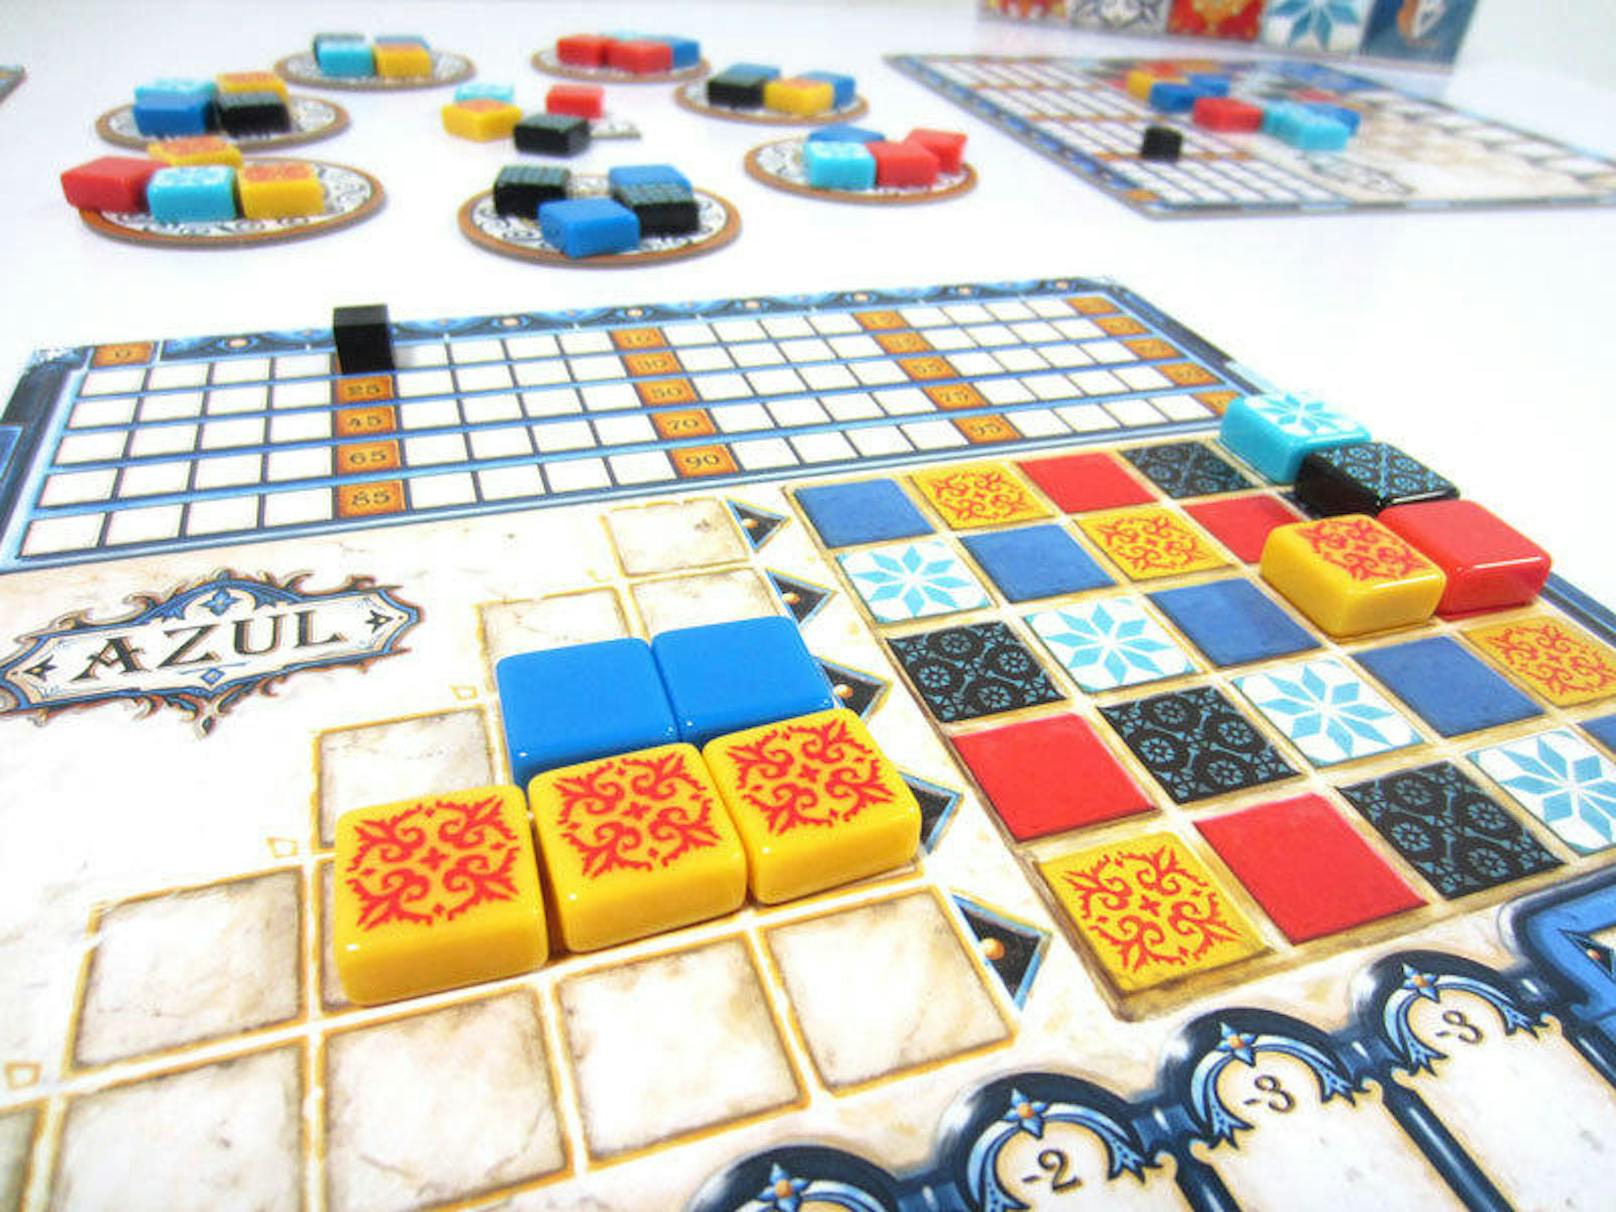 <b>27. Juli 2018:</b> Das Strategiespiel "Azul" ist zum Spiel des Jahres gewählt worden. Darin kann man mit Keramikkacheln ("Azulejos") im Miniformat den Palast des portugiesischen Königs Manuel I. legen. Bei der AfD kochte die Wut über, sofort wurde bekannt gegeben, dass eine "links versiffte Jury aus Gutmenschen" den Titel gewählt habe. Warum? Weil man sich verhört hatte: "Azul" war von der AfD als "Asyl" verstanden worden, berichtet die "taz".